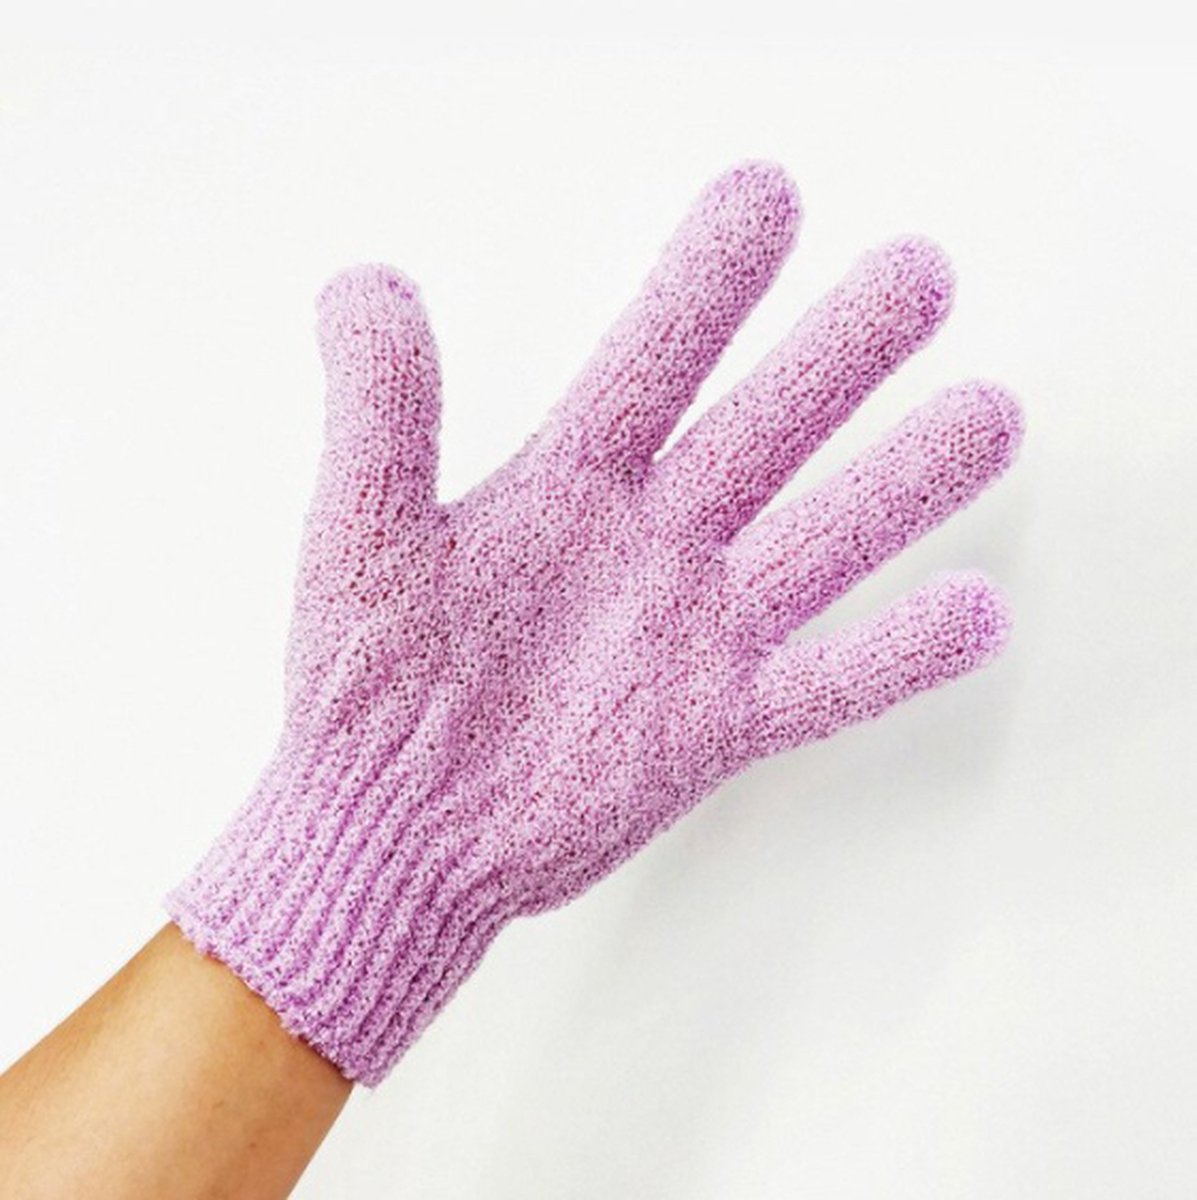 1 Stuk - Scrubhandschoen - Washandje - Scrub handschoen - Paars - Handschoen om mee te scrubben - Huidverzorging - Scrubhandschoen voor onder de douche - Douchehandschoen - Washandje met scrub -